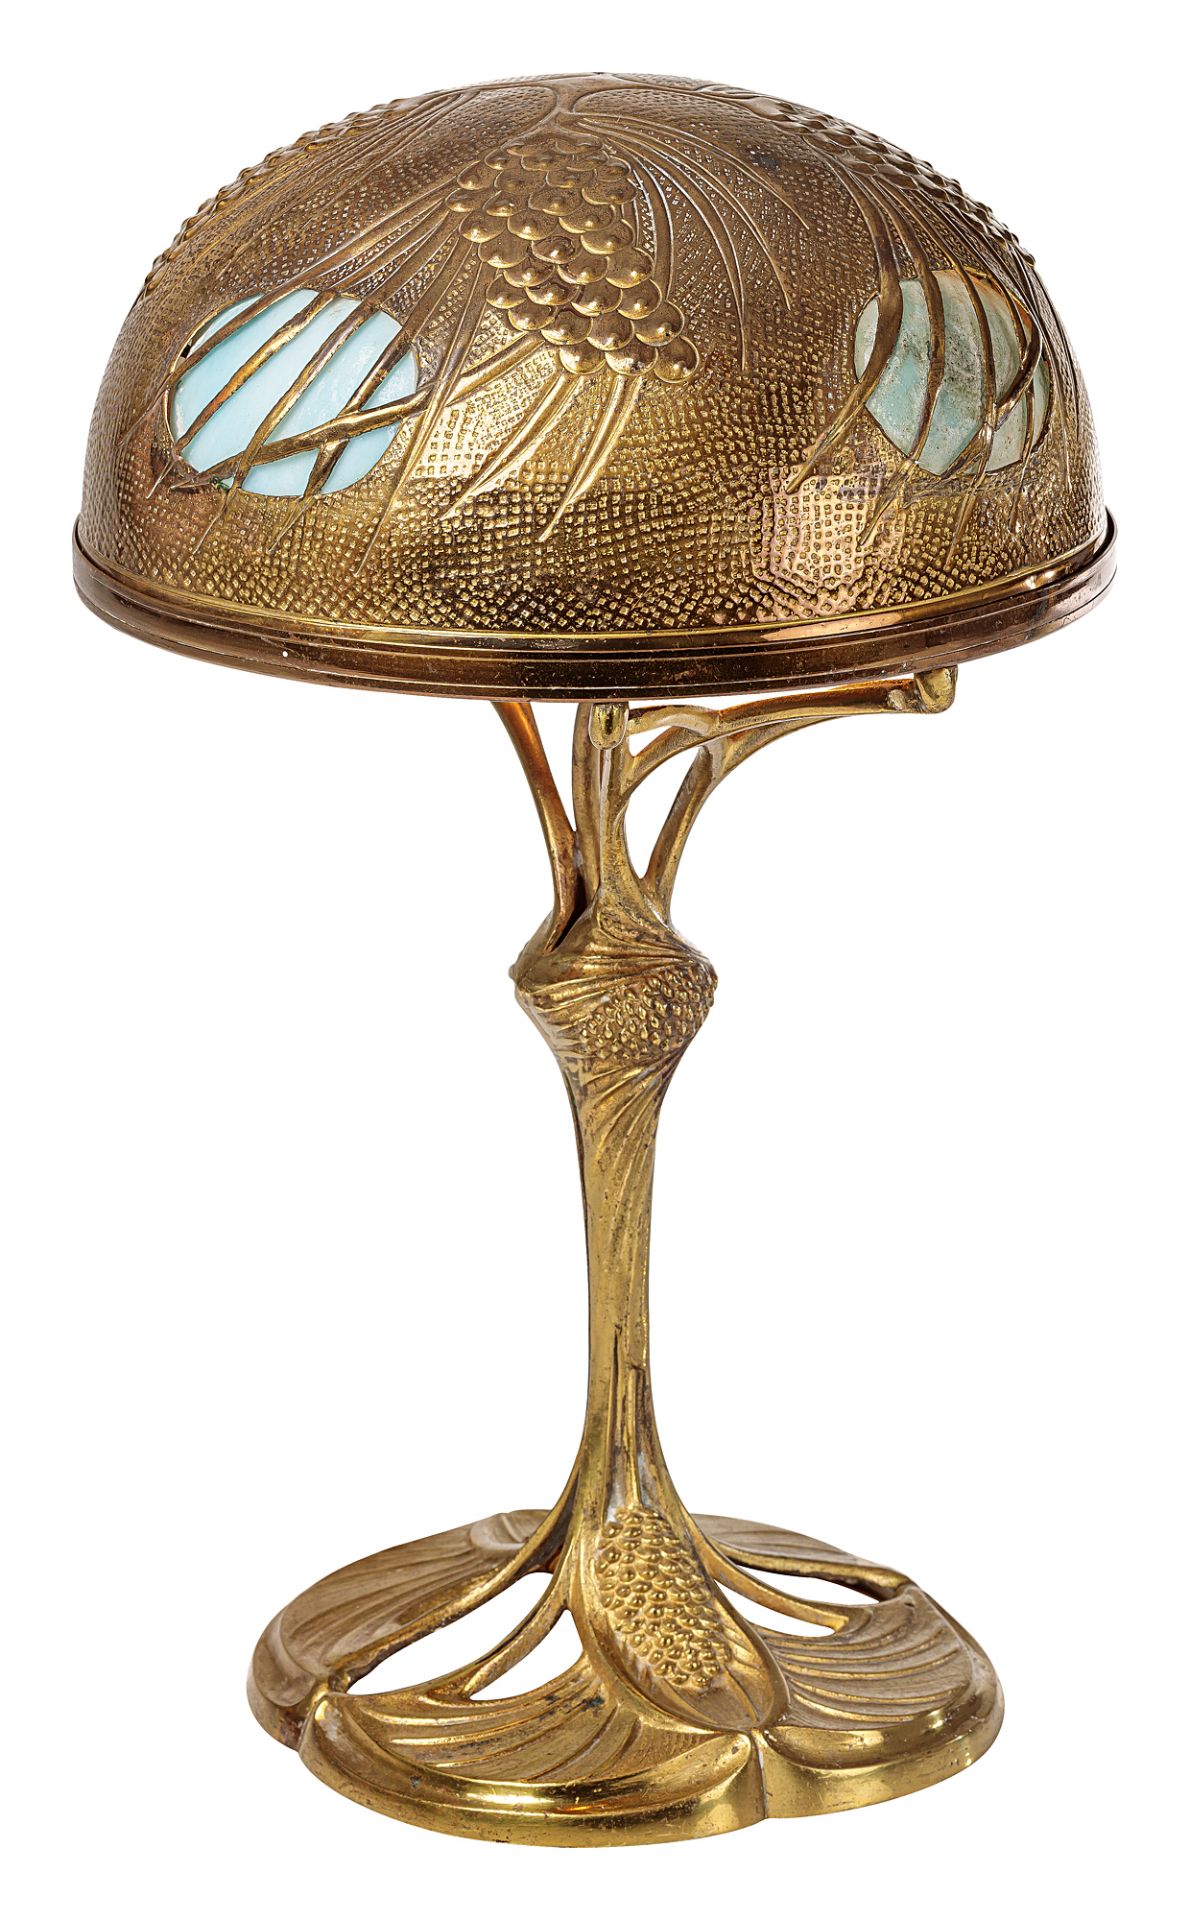 Georges Leleu desk lamp - Image 2 of 3